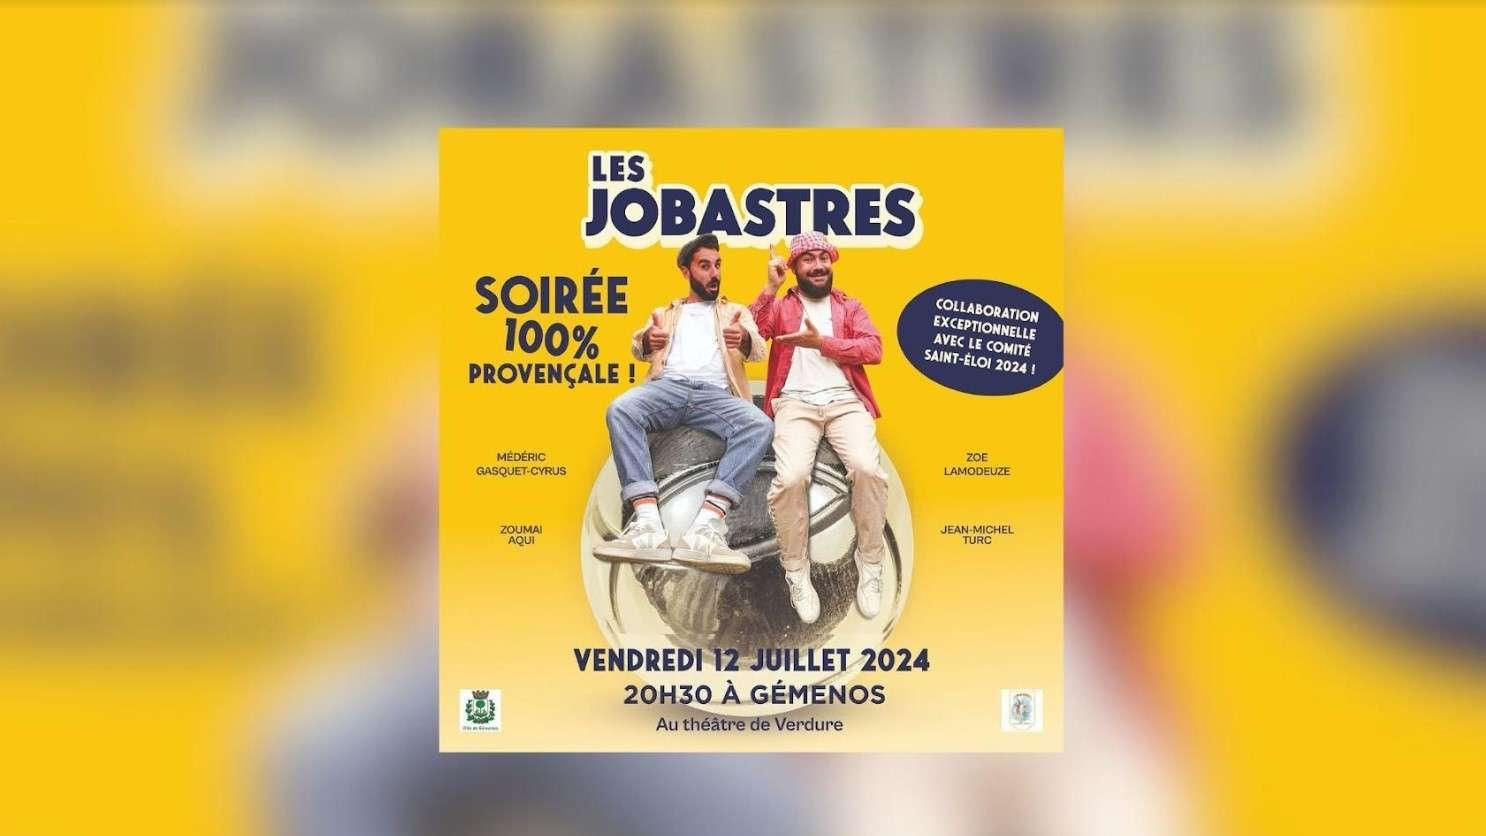 Les Jobastres dans soirée 100% provençale à Gémenos